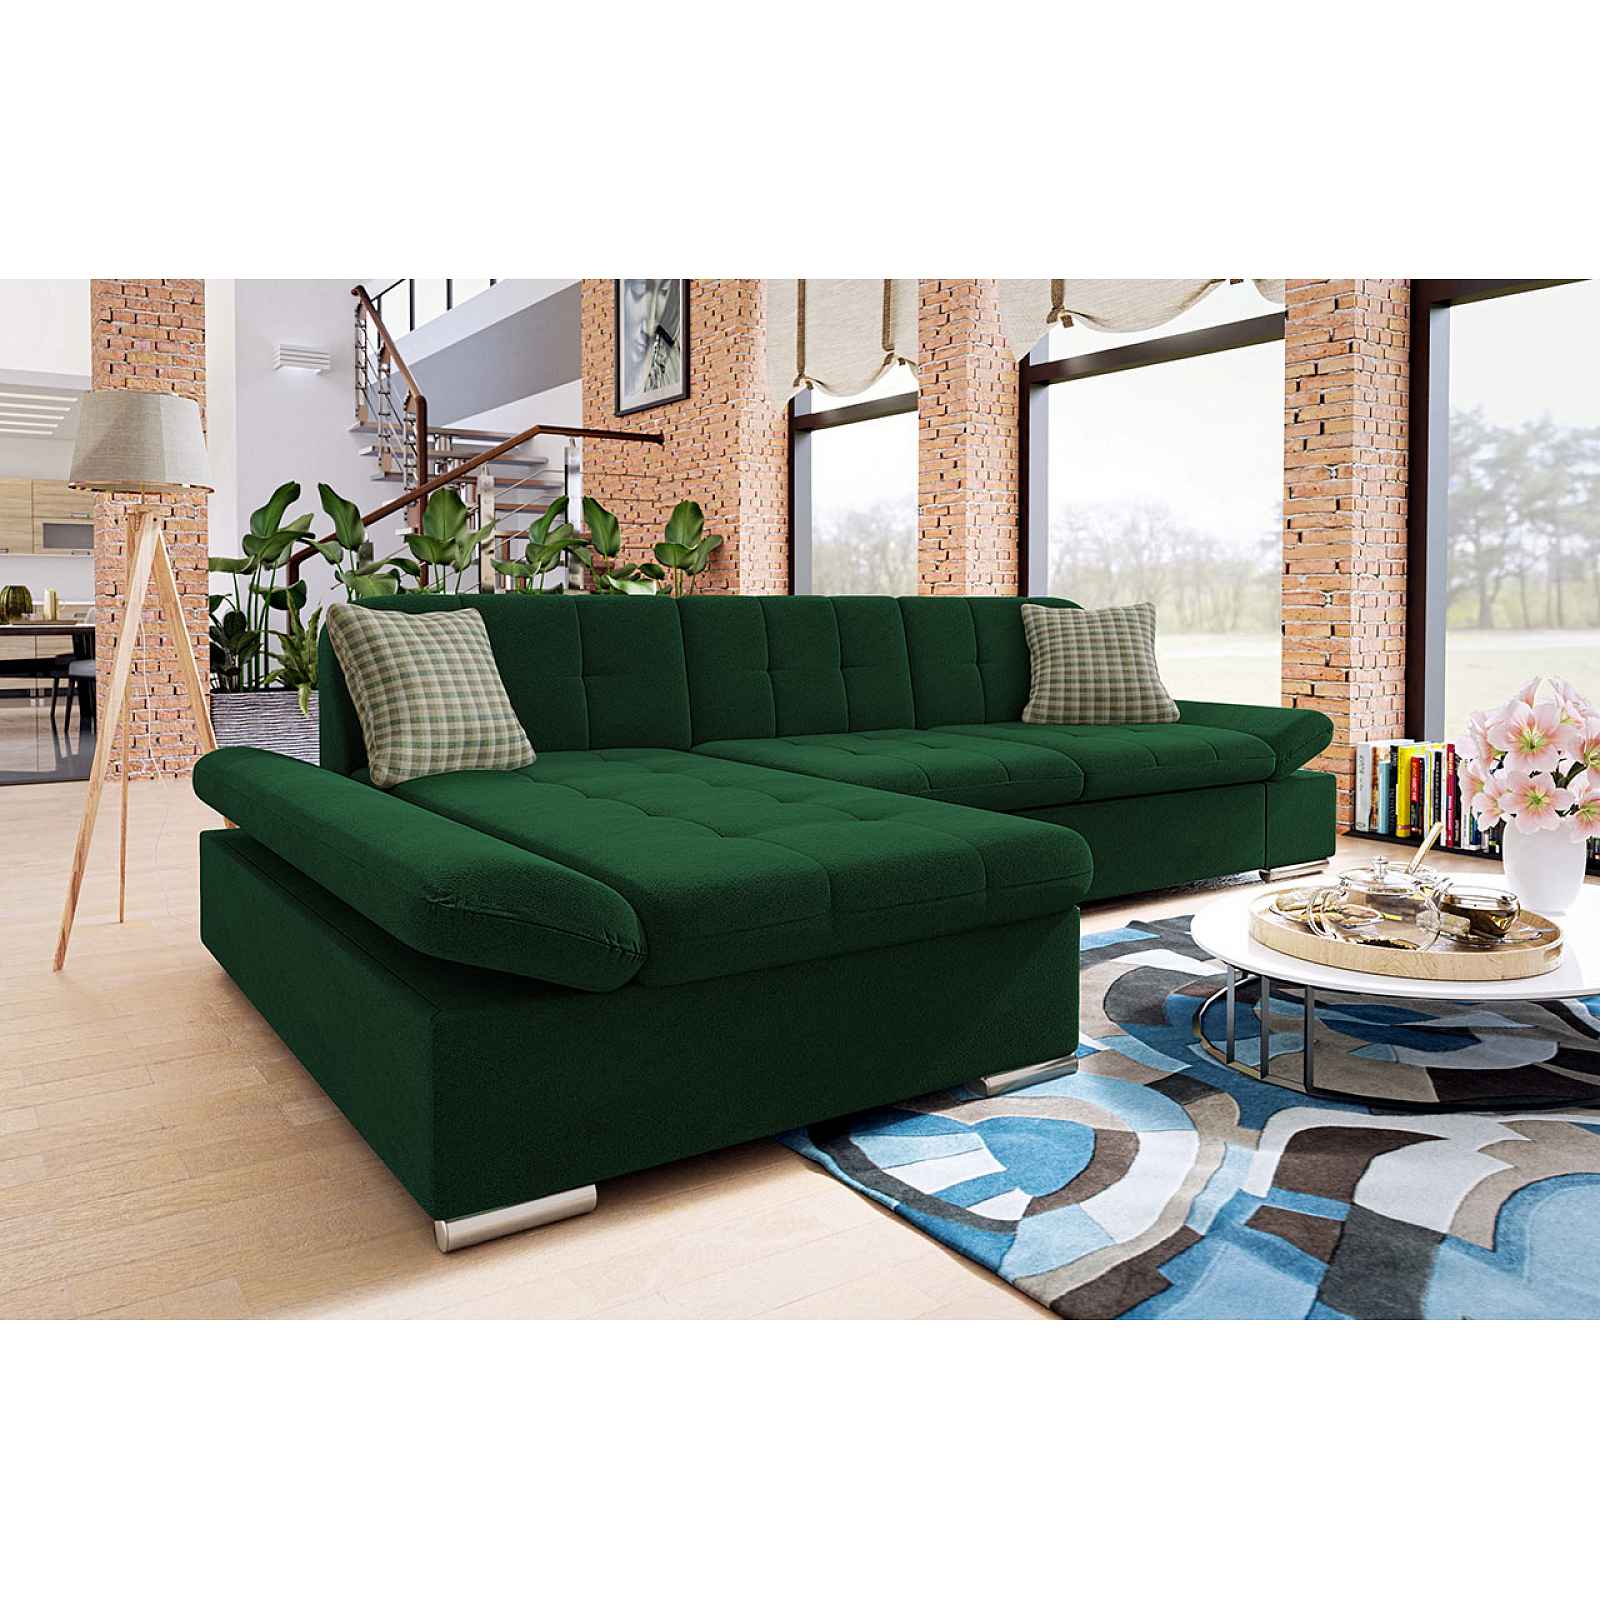 Moderní rohová sedačka Malaga, zelená